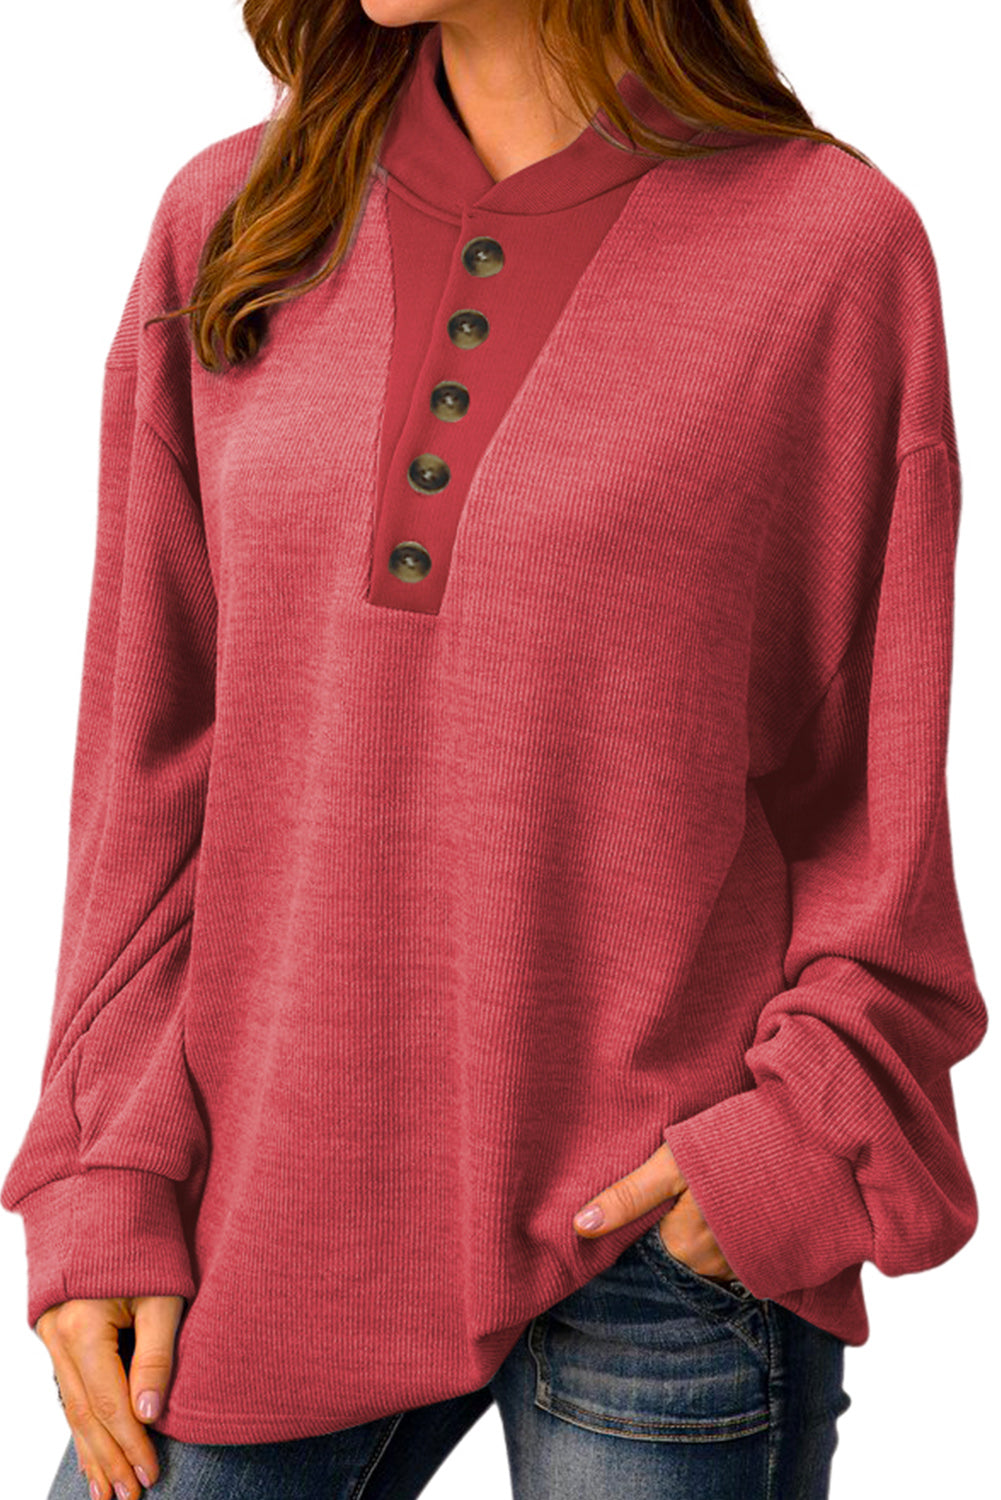 Feuriges rotes, einfarbiges Henley-Sweatshirt mit Knöpfen